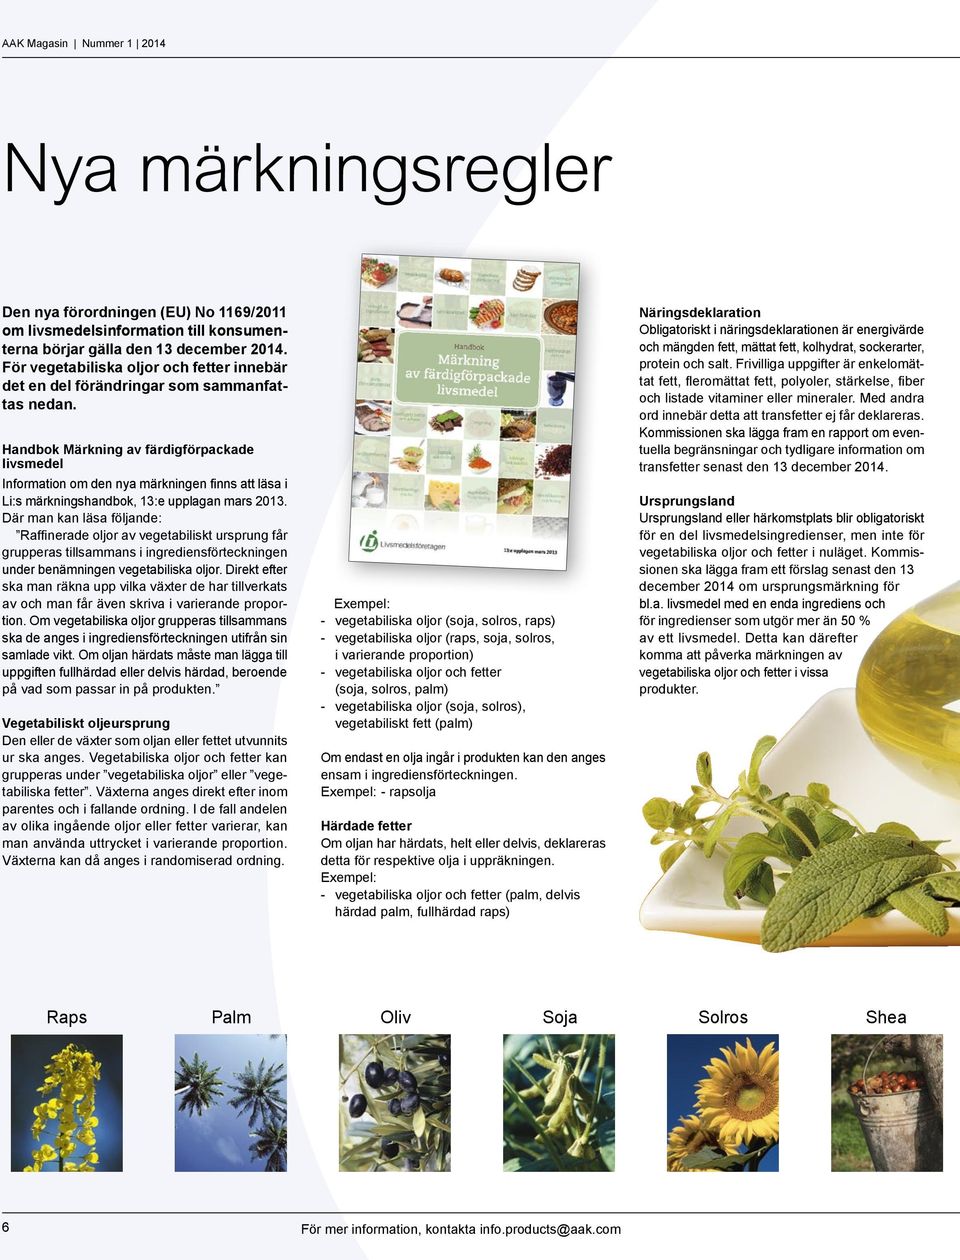 Handbok Märkning av färdigförpackade livsmedel Information om den nya märkningen finns att läsa i Li:s märkningshandbok, 13:e upplagan mars 2013.